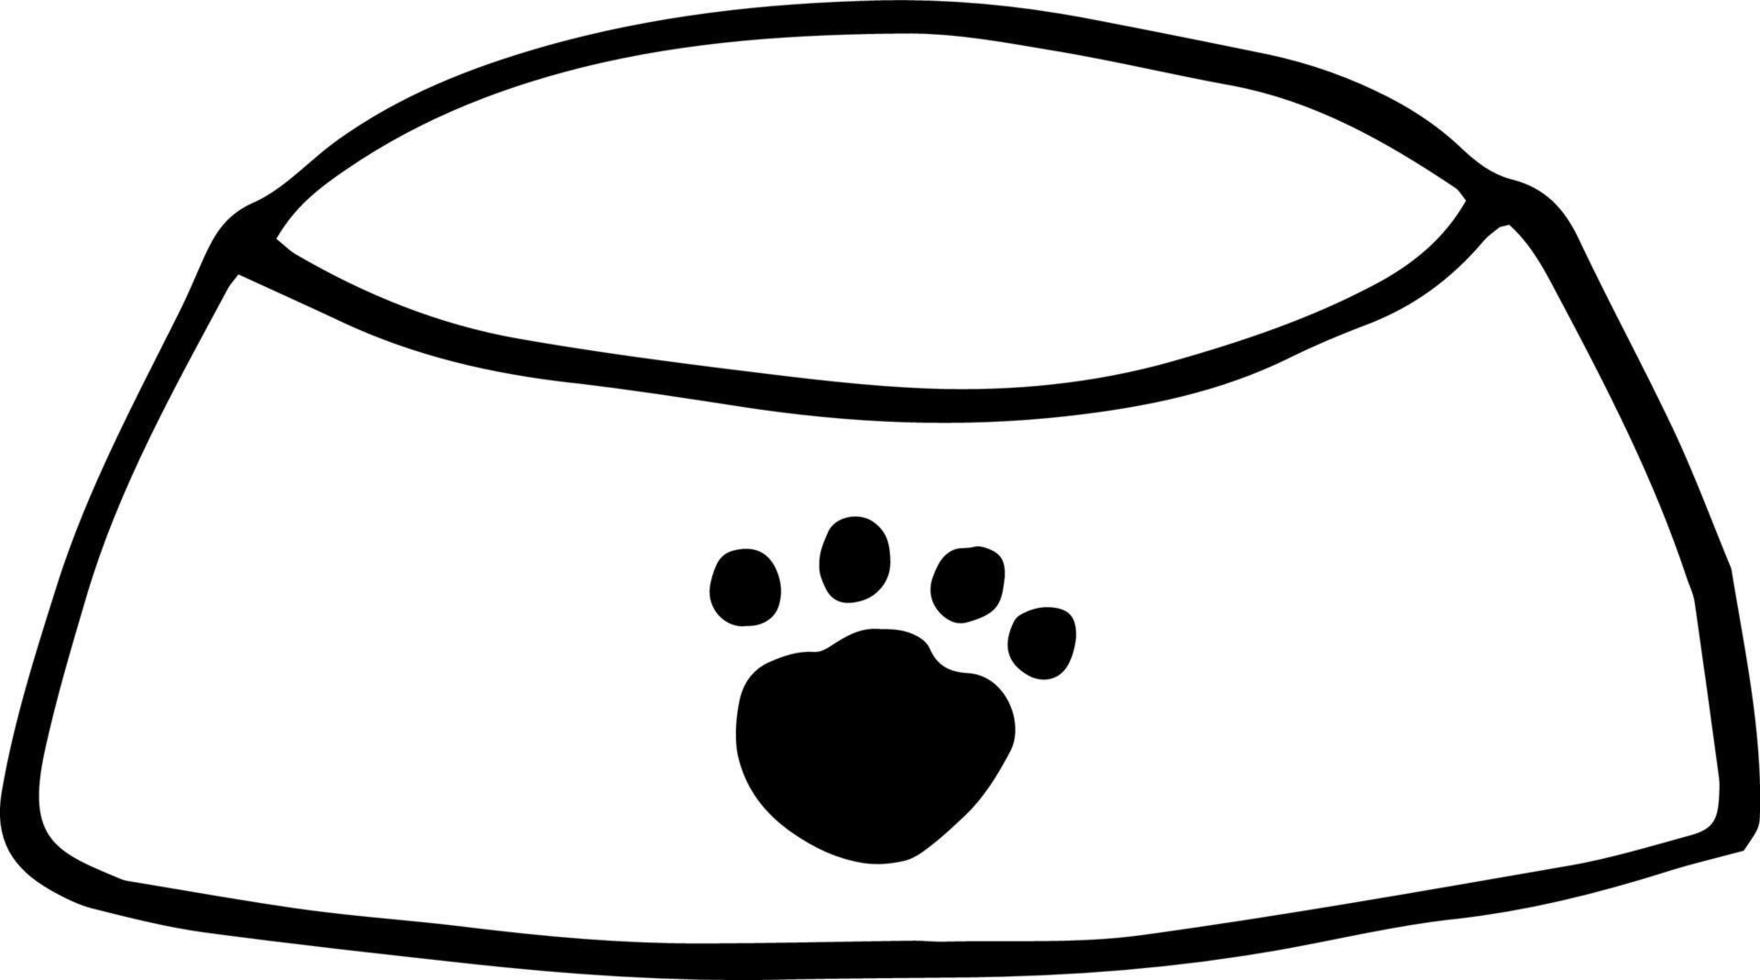 tazón icono de comida para mascotas. garabato dibujado a mano. , escandinavo, minimalismo nórdico monocromo vector